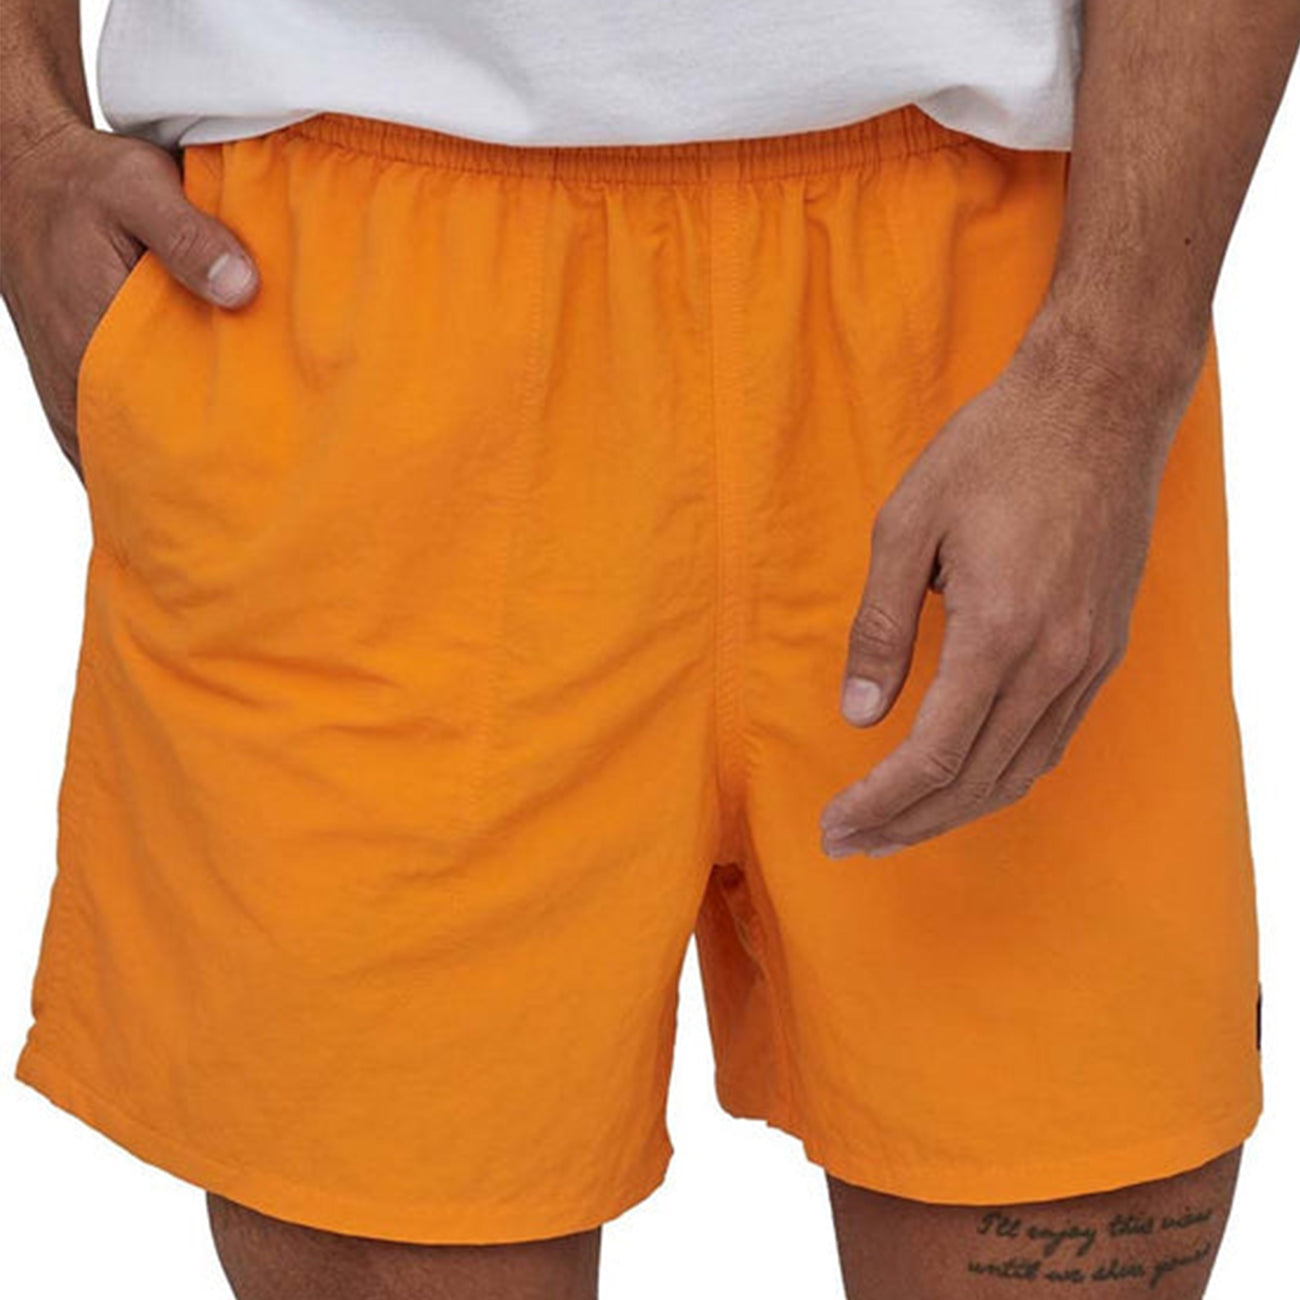 Baggies Shorts 5" - Tigerlily Orange